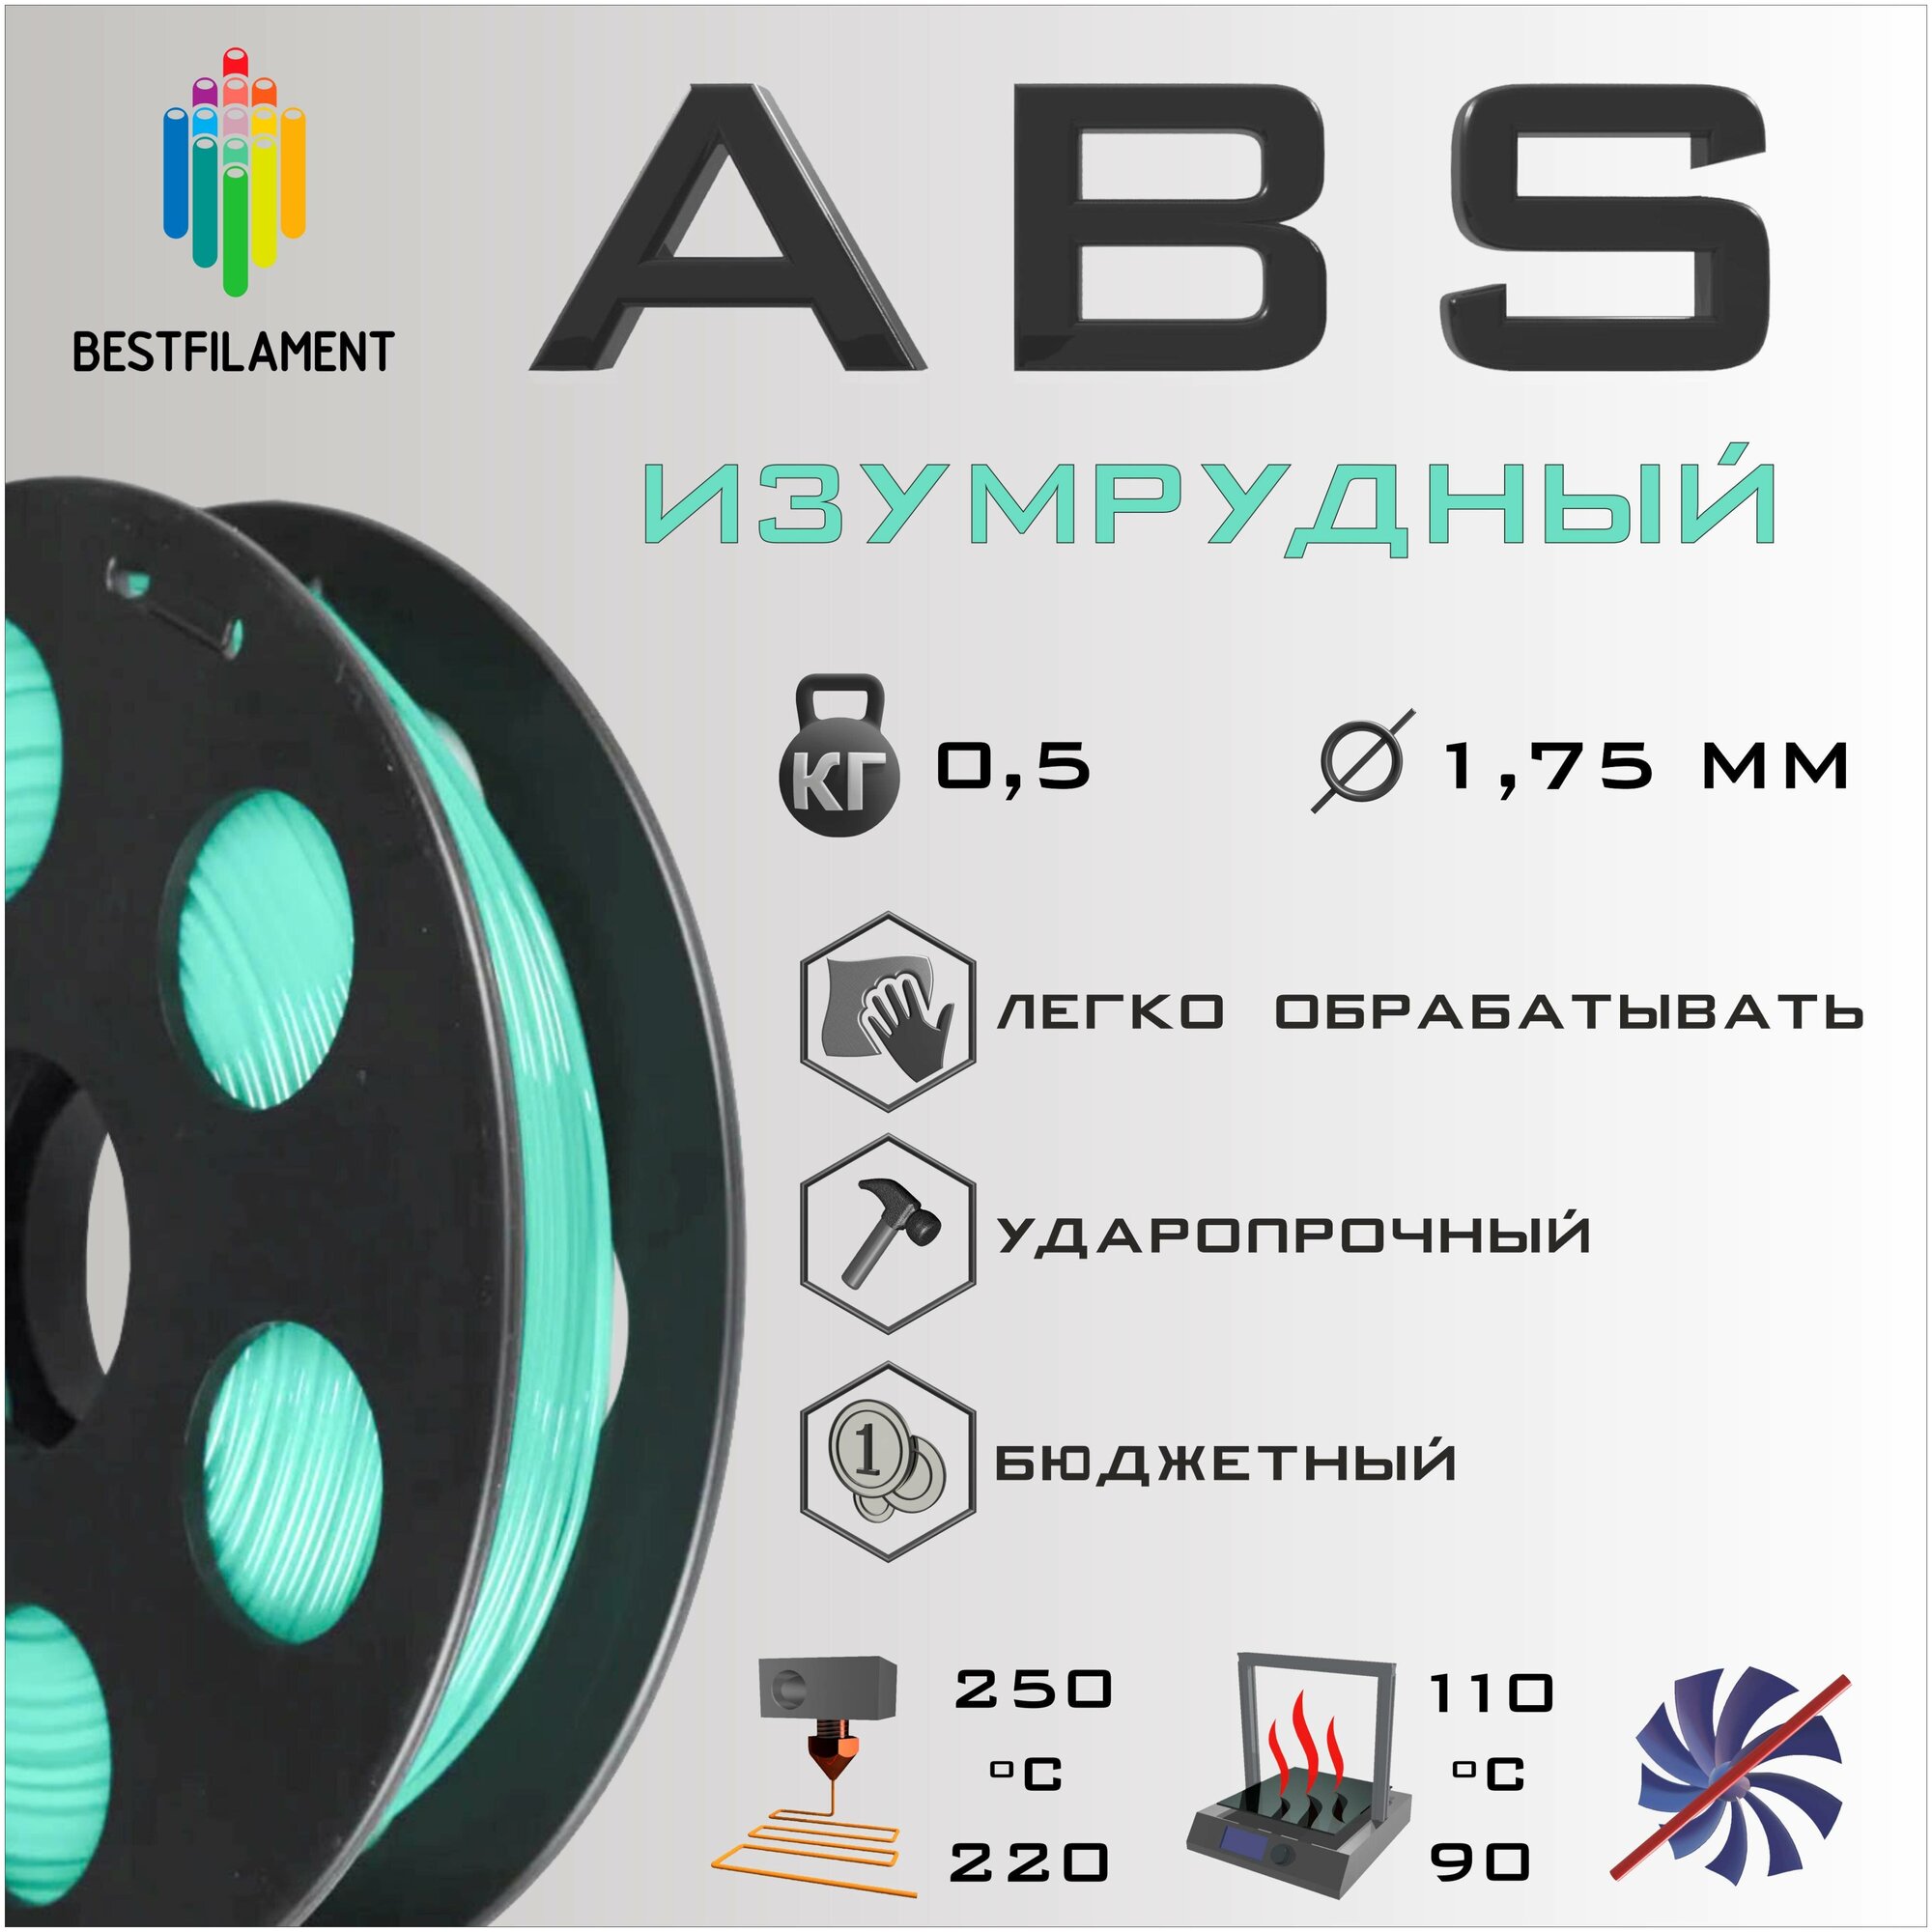 ABS Изумрудный 500 гр. 1.75 мм пластик Bestfilament для 3D-принтера